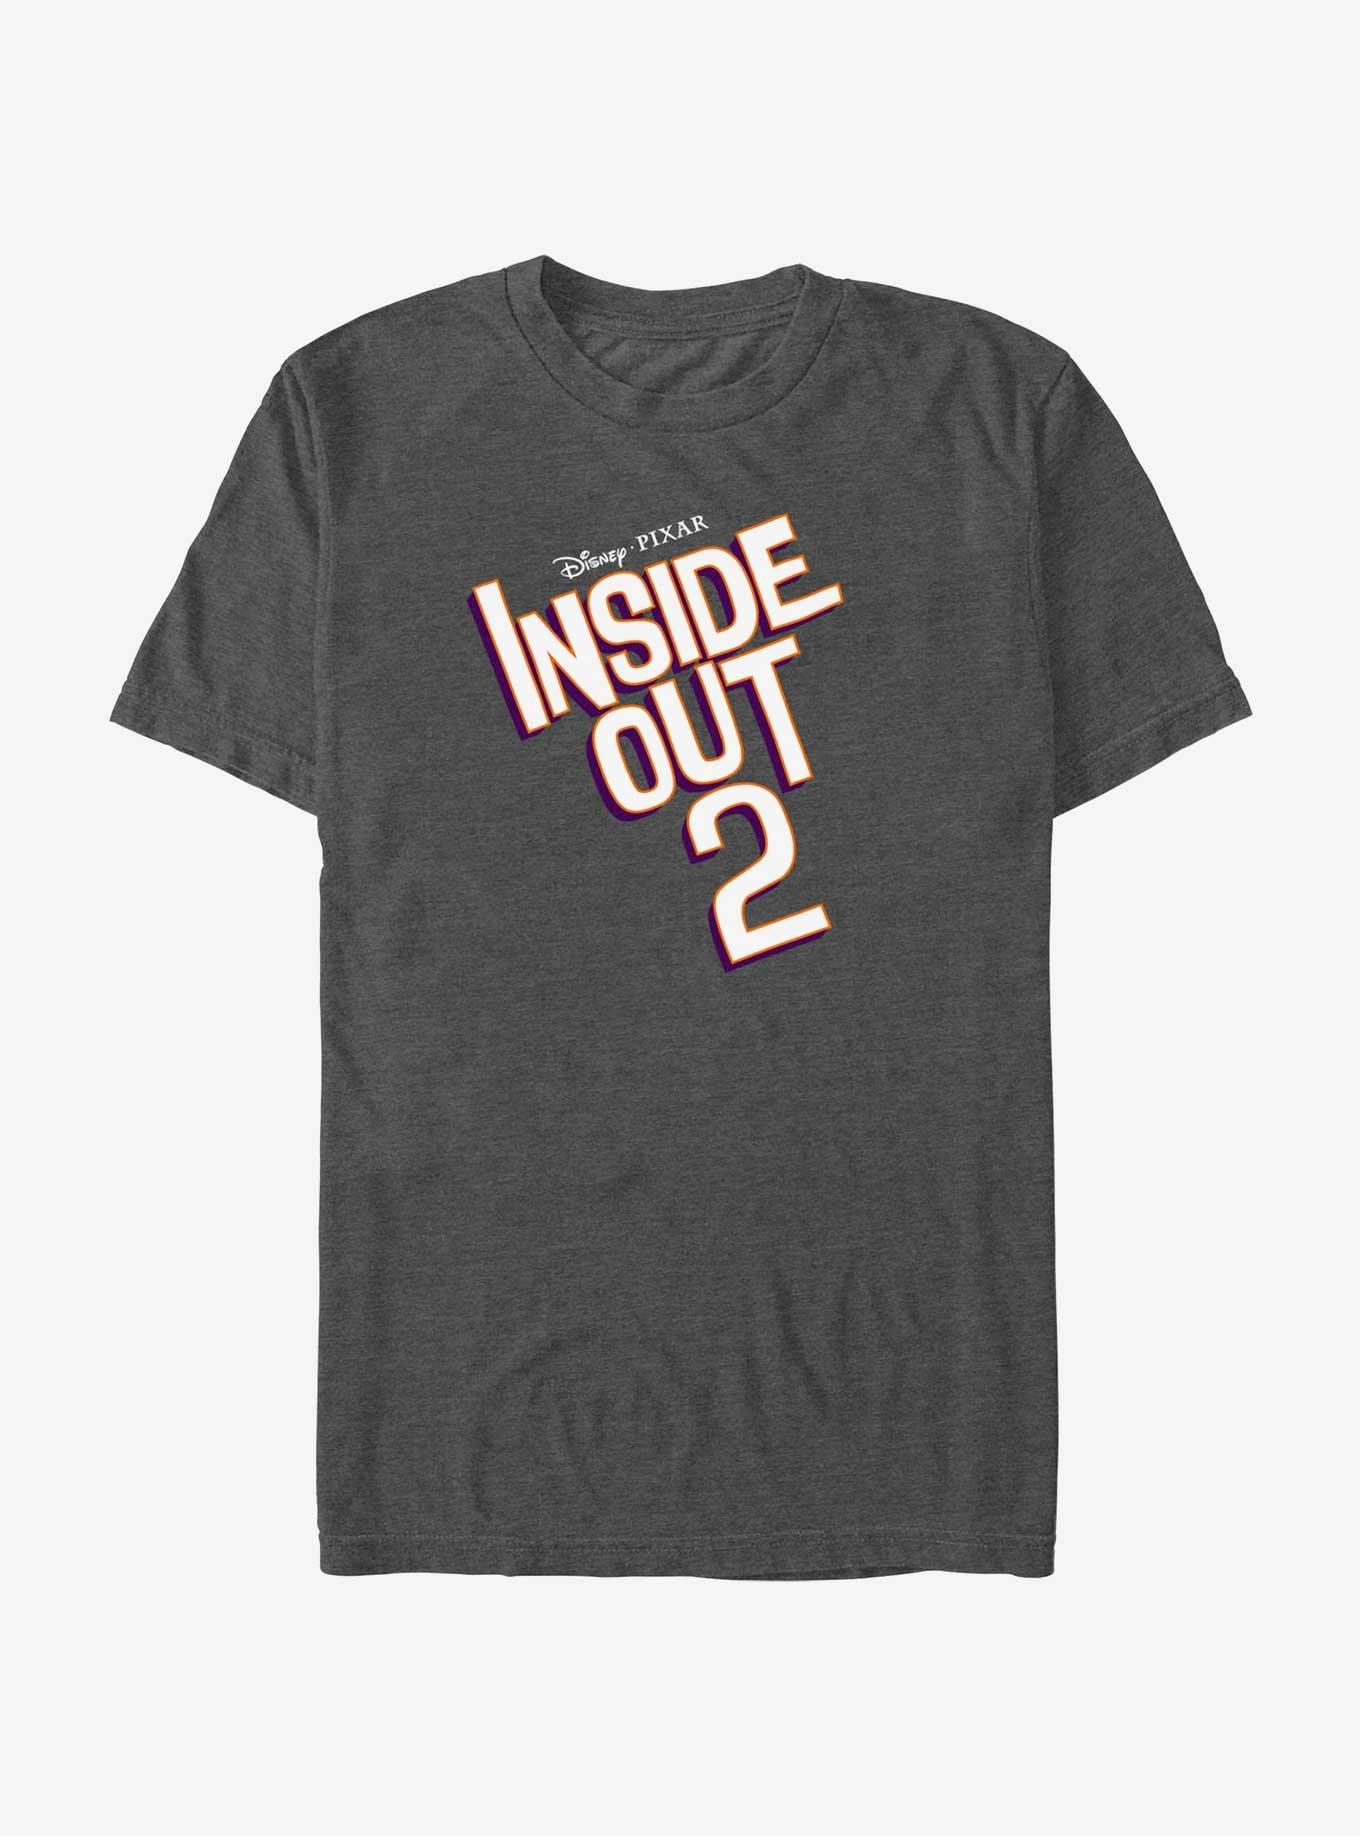 Disney Pixar Inside Out 2 Logo T-Shirt, CHAR HTR, hi-res